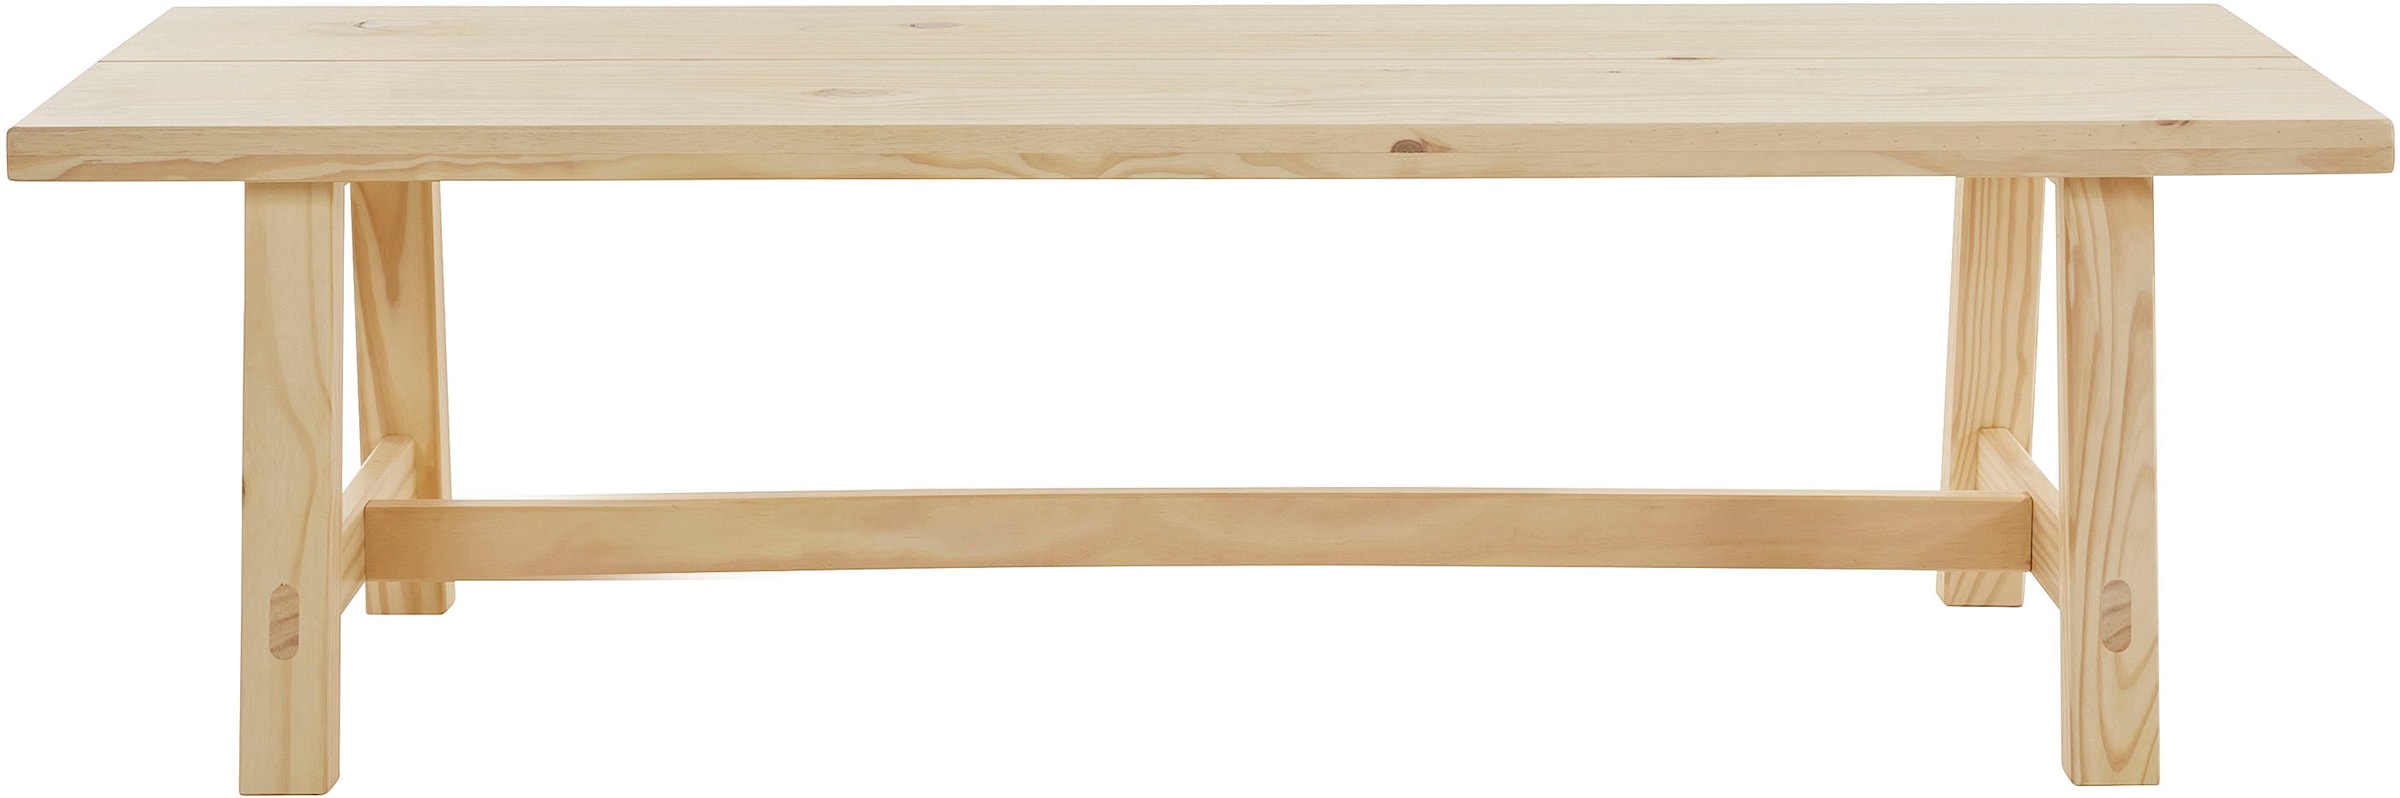 Timbers Essbank »Gainesville«, (1 St.), Sitzfläche, Gestell aus Kiefer, versch. Farbvarianten, Sitzhöhe 46 cm